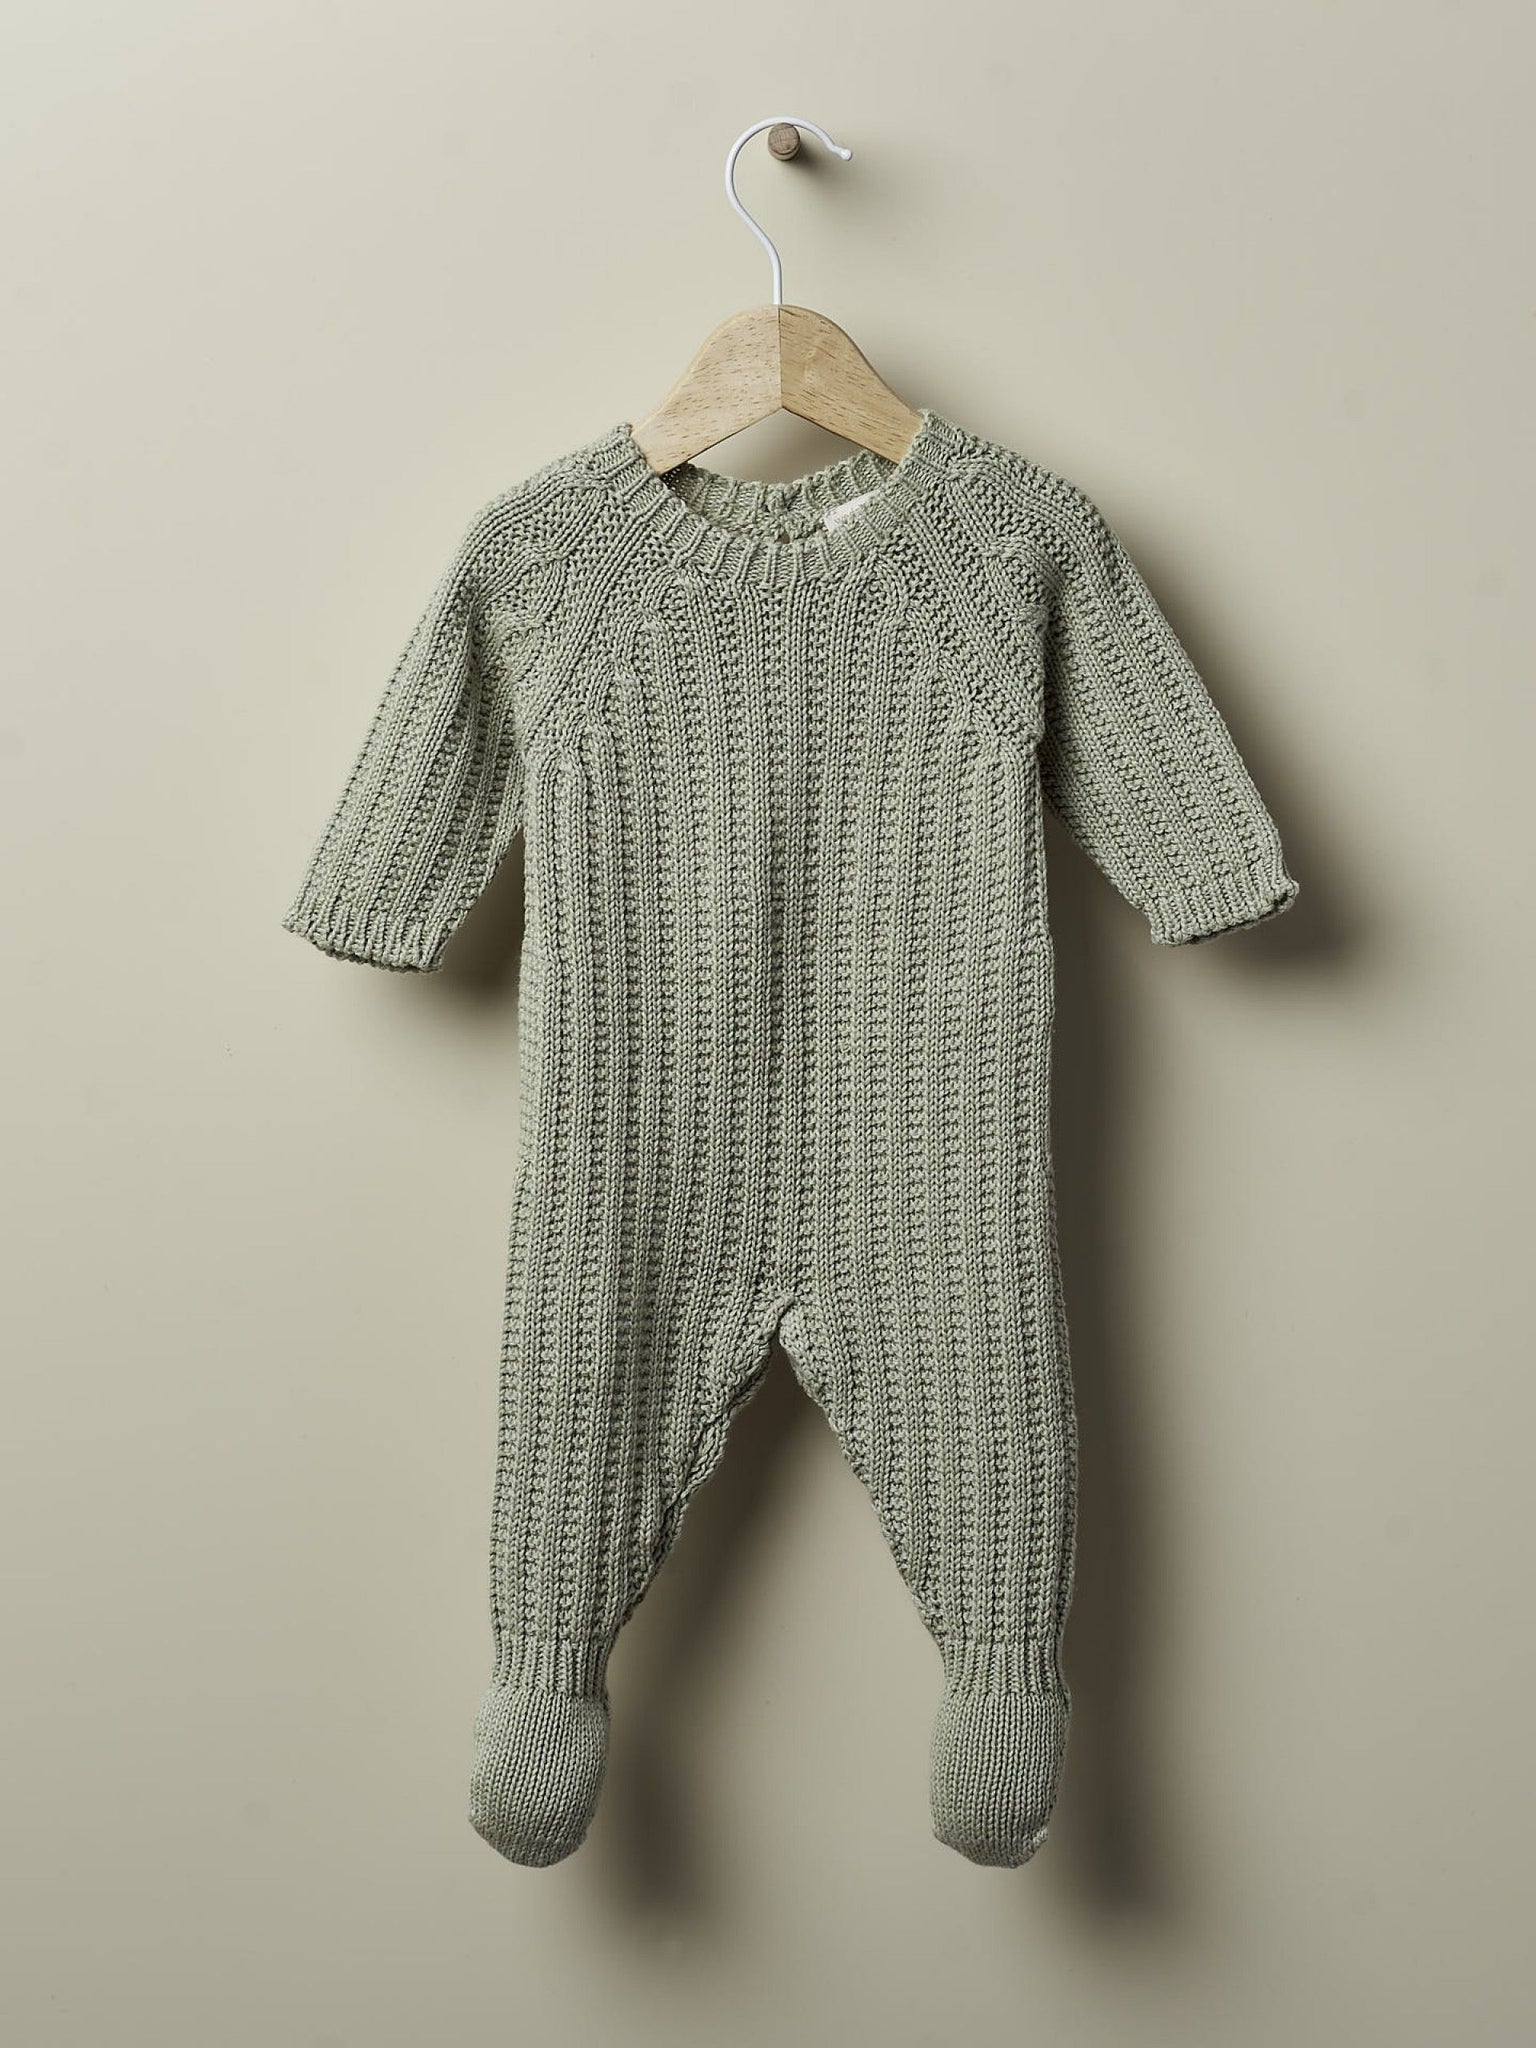 Babygrow tricotado em algodão orgânico